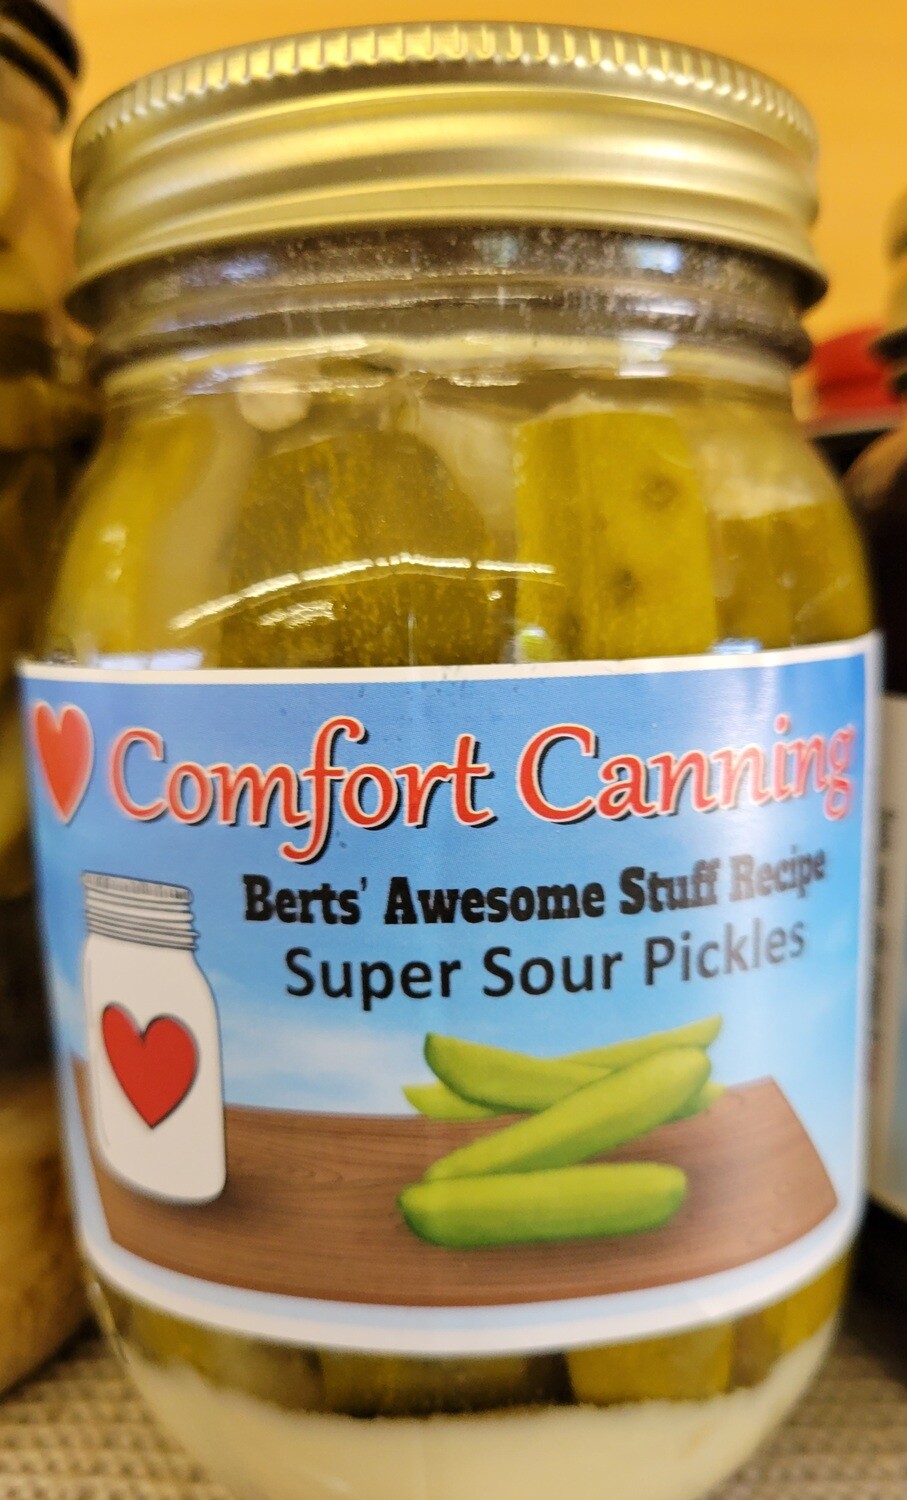 Comfort Canning - Super Sour Pickles